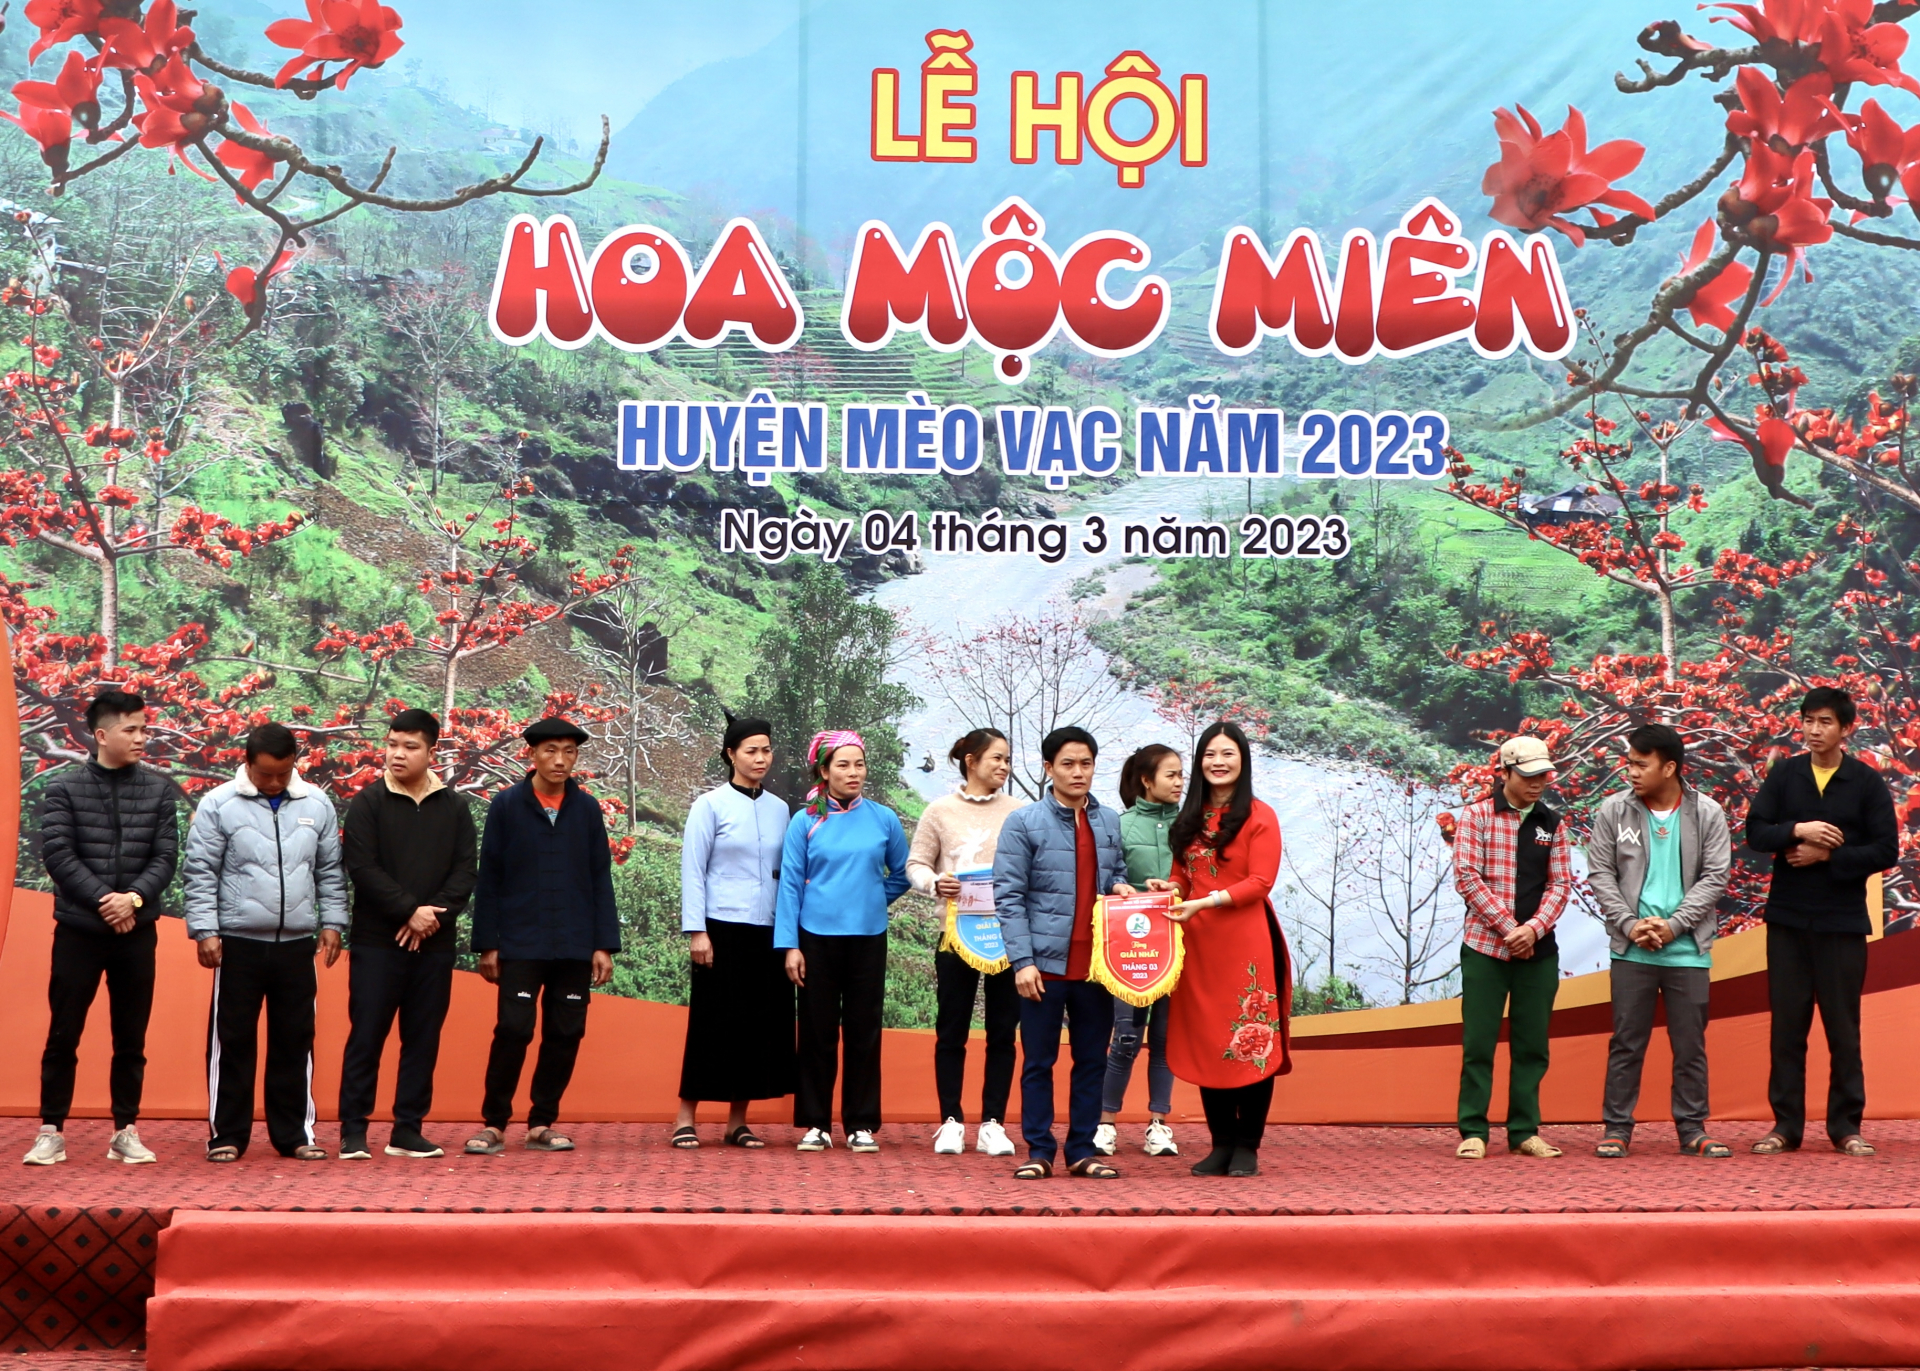 Đồng chí Vương Ngọc Hà, Bí thư Huyện ủy Mèo Vạc trao giải Nhất phần thi chèo bè mảng trên sông Nhiệm cho huyện Bắc Mê.